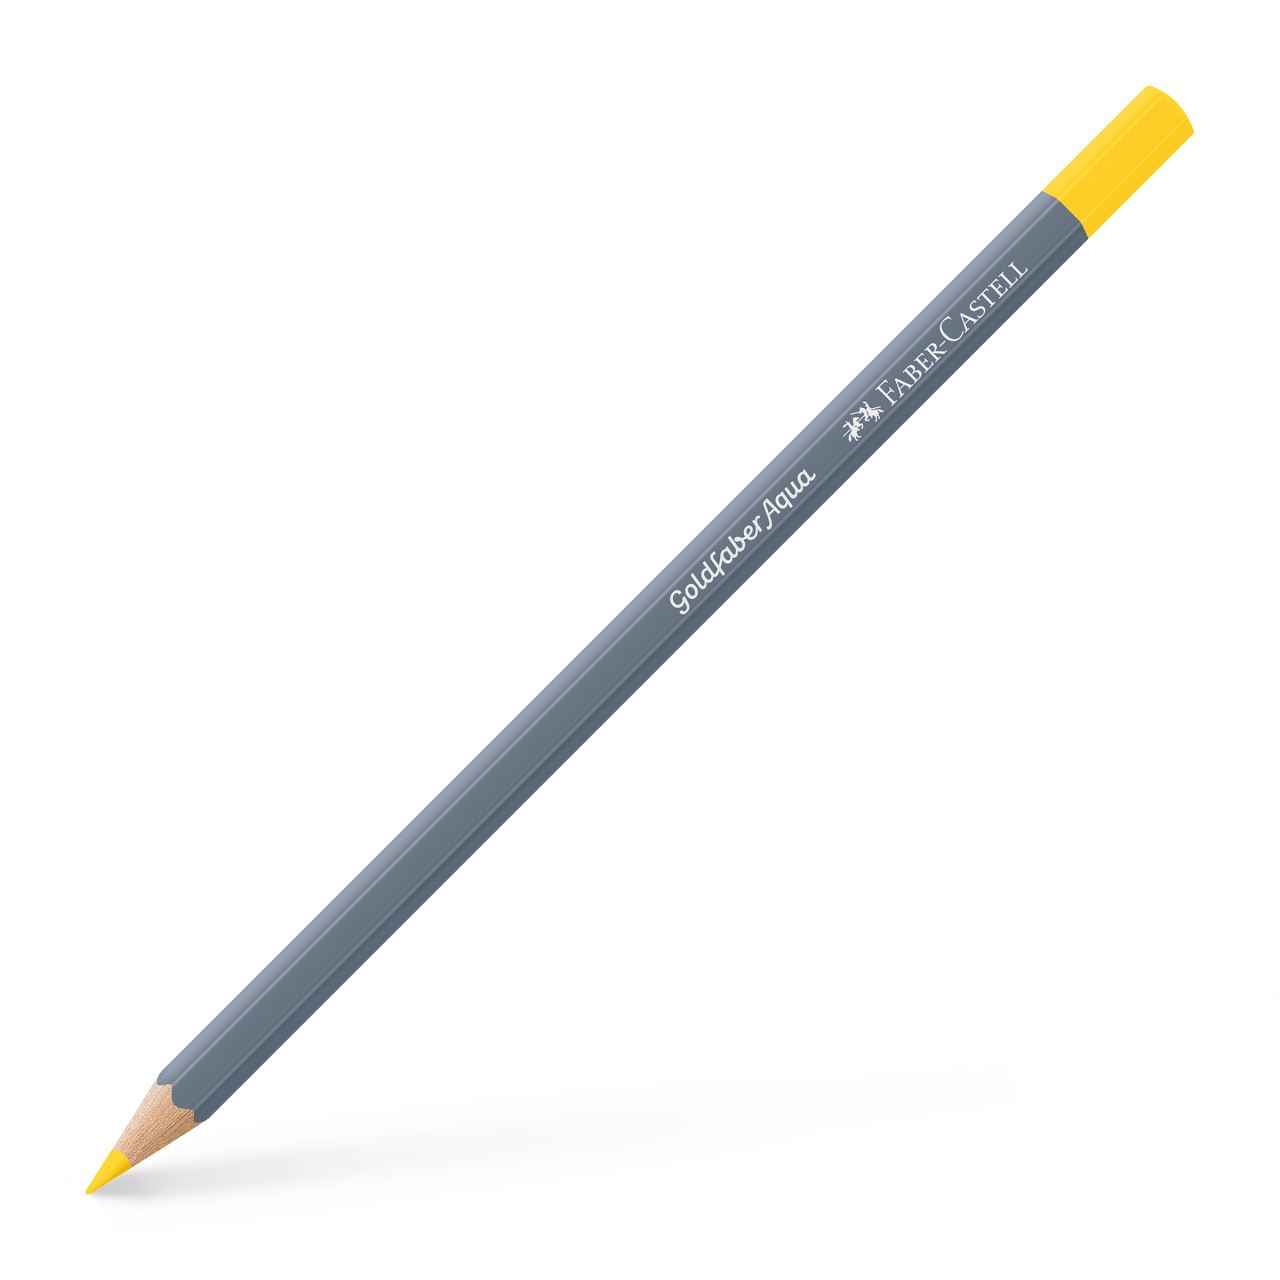 Faber-Castell - Crayon Goldfaber Aqua jaune cadmium claire